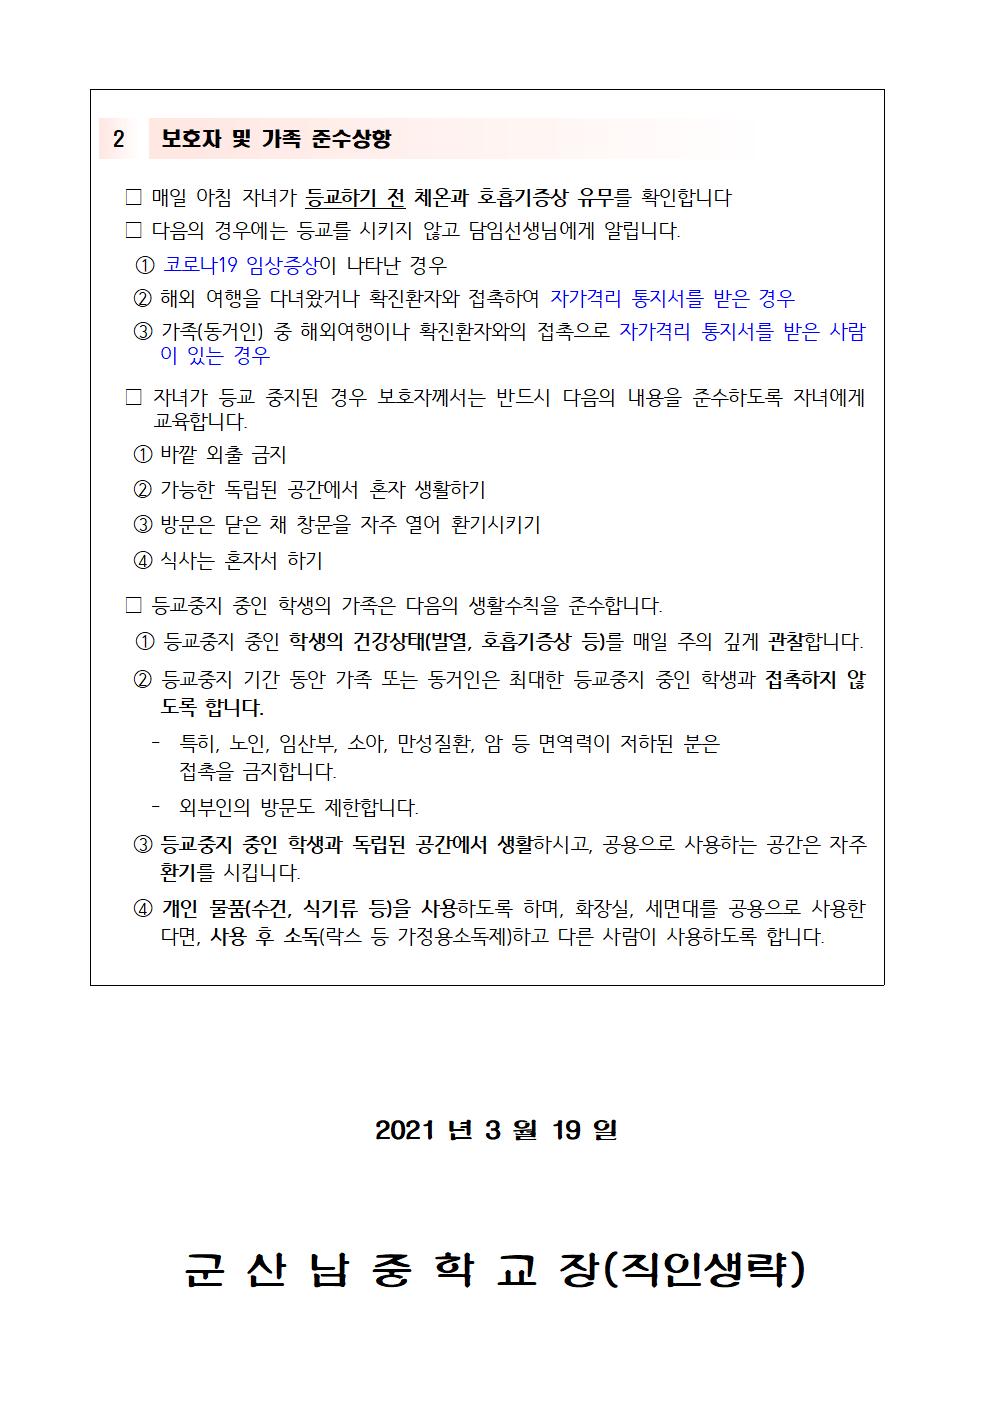 코로나 19 선별검사소 방문 후 생활수칙 가정통신문002